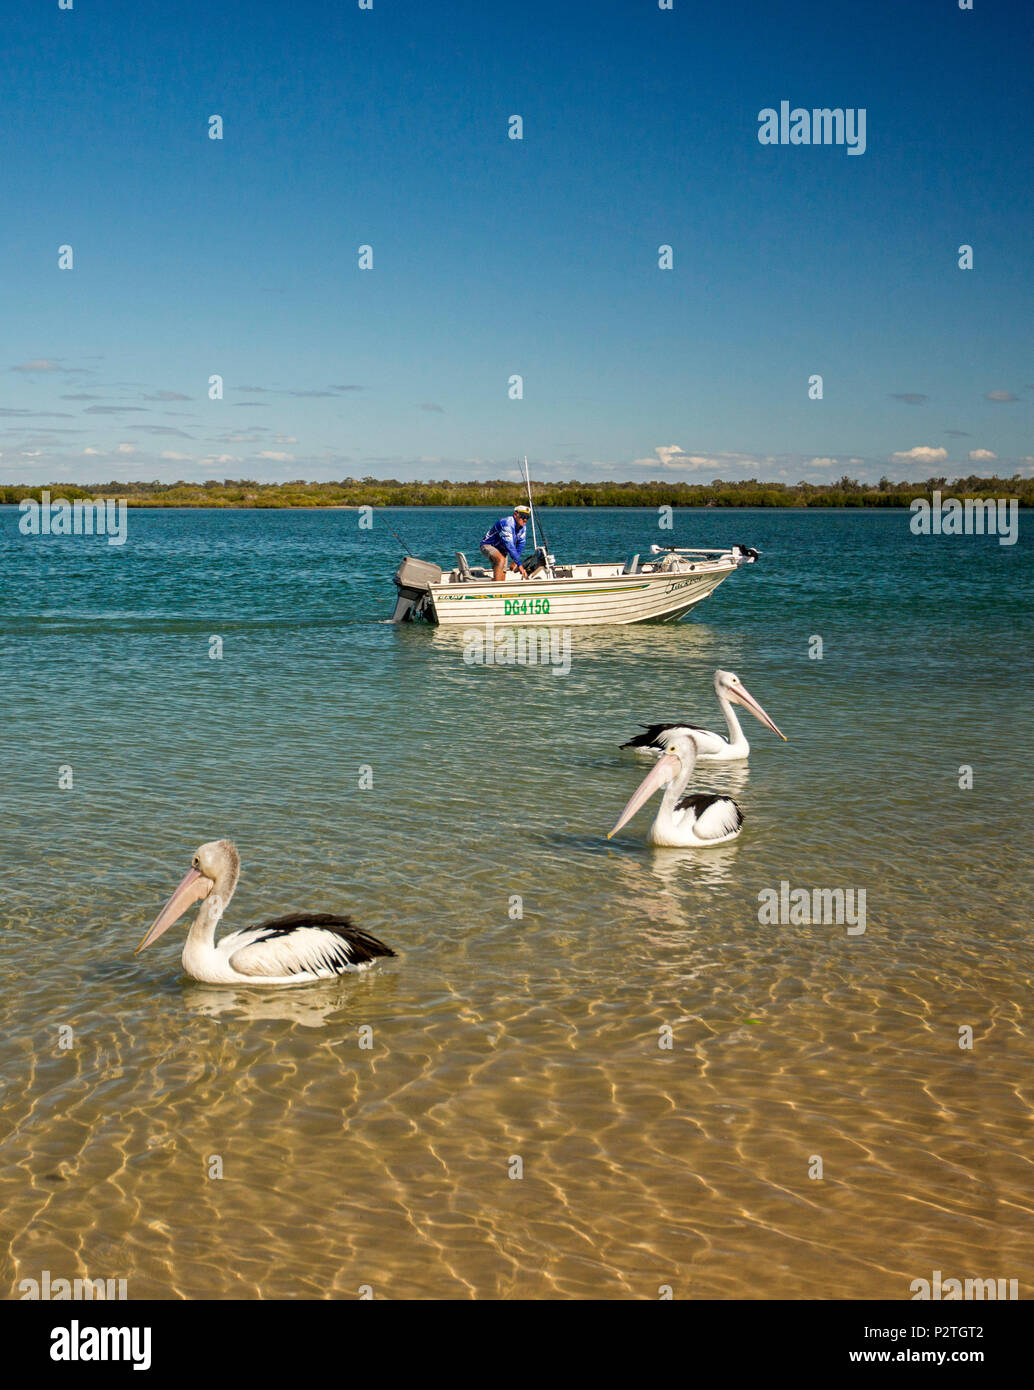 Mann angeln vom Schlauchboot mit pelikane neben dem Boot auf ruhige, blaue Wasser in der Nähe von Küsten Strand unter blauem Himmel in Queensland, Australien Stockfoto